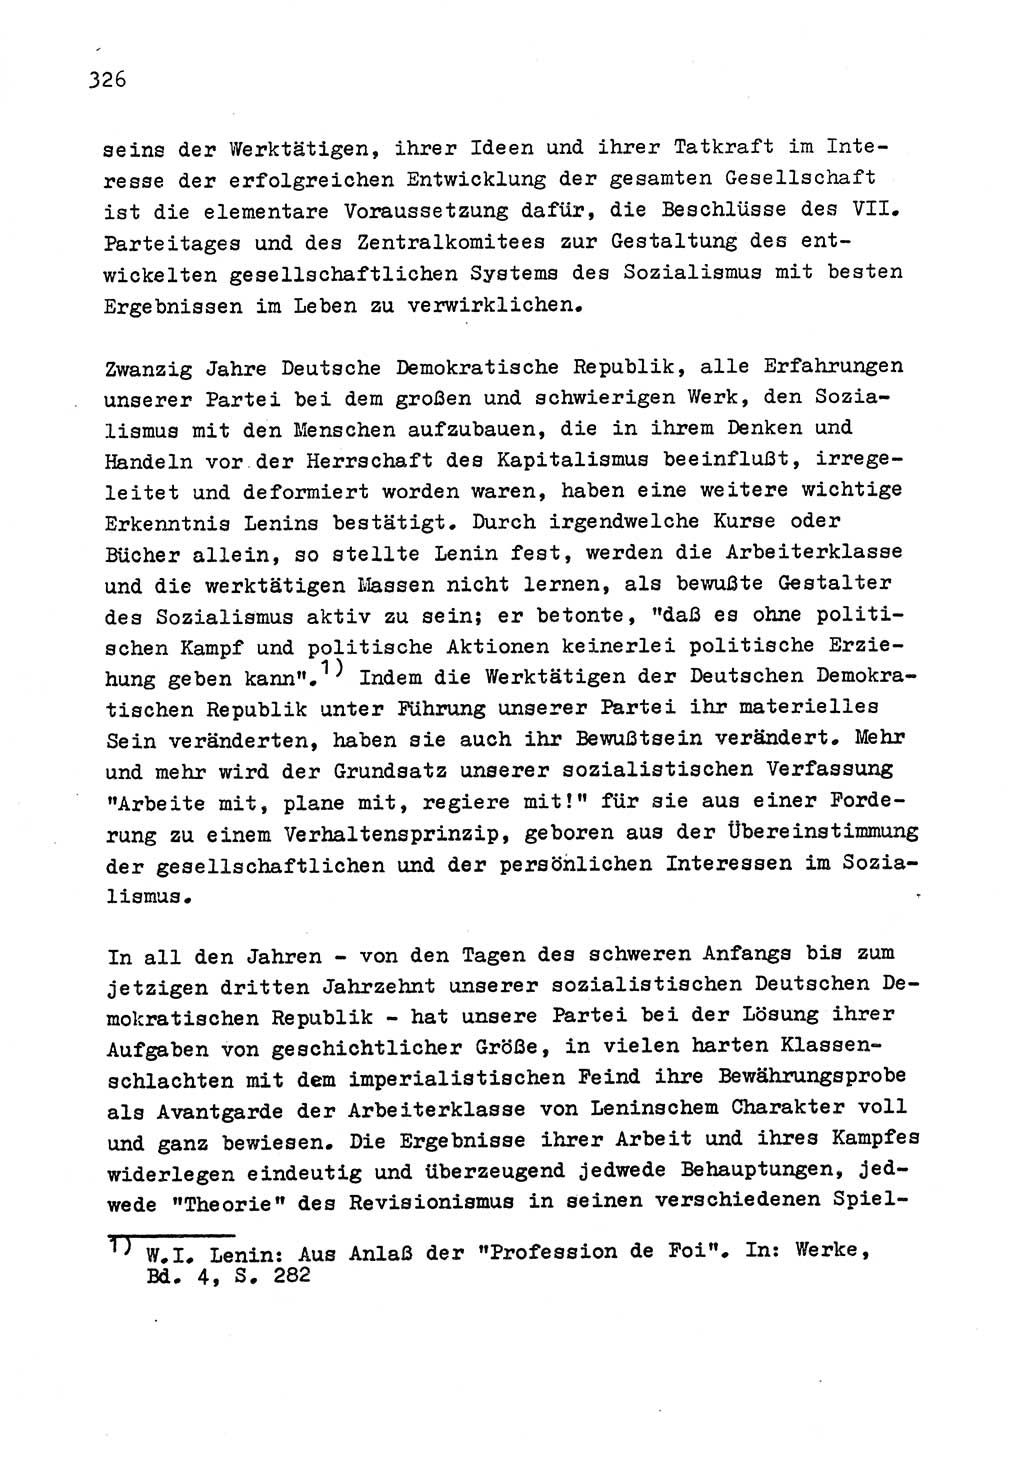 Zu Fragen der Parteiarbeit [Sozialistische Einheitspartei Deutschlands (SED) Deutsche Demokratische Republik (DDR)] 1979, Seite 326 (Fr. PA SED DDR 1979, S. 326)